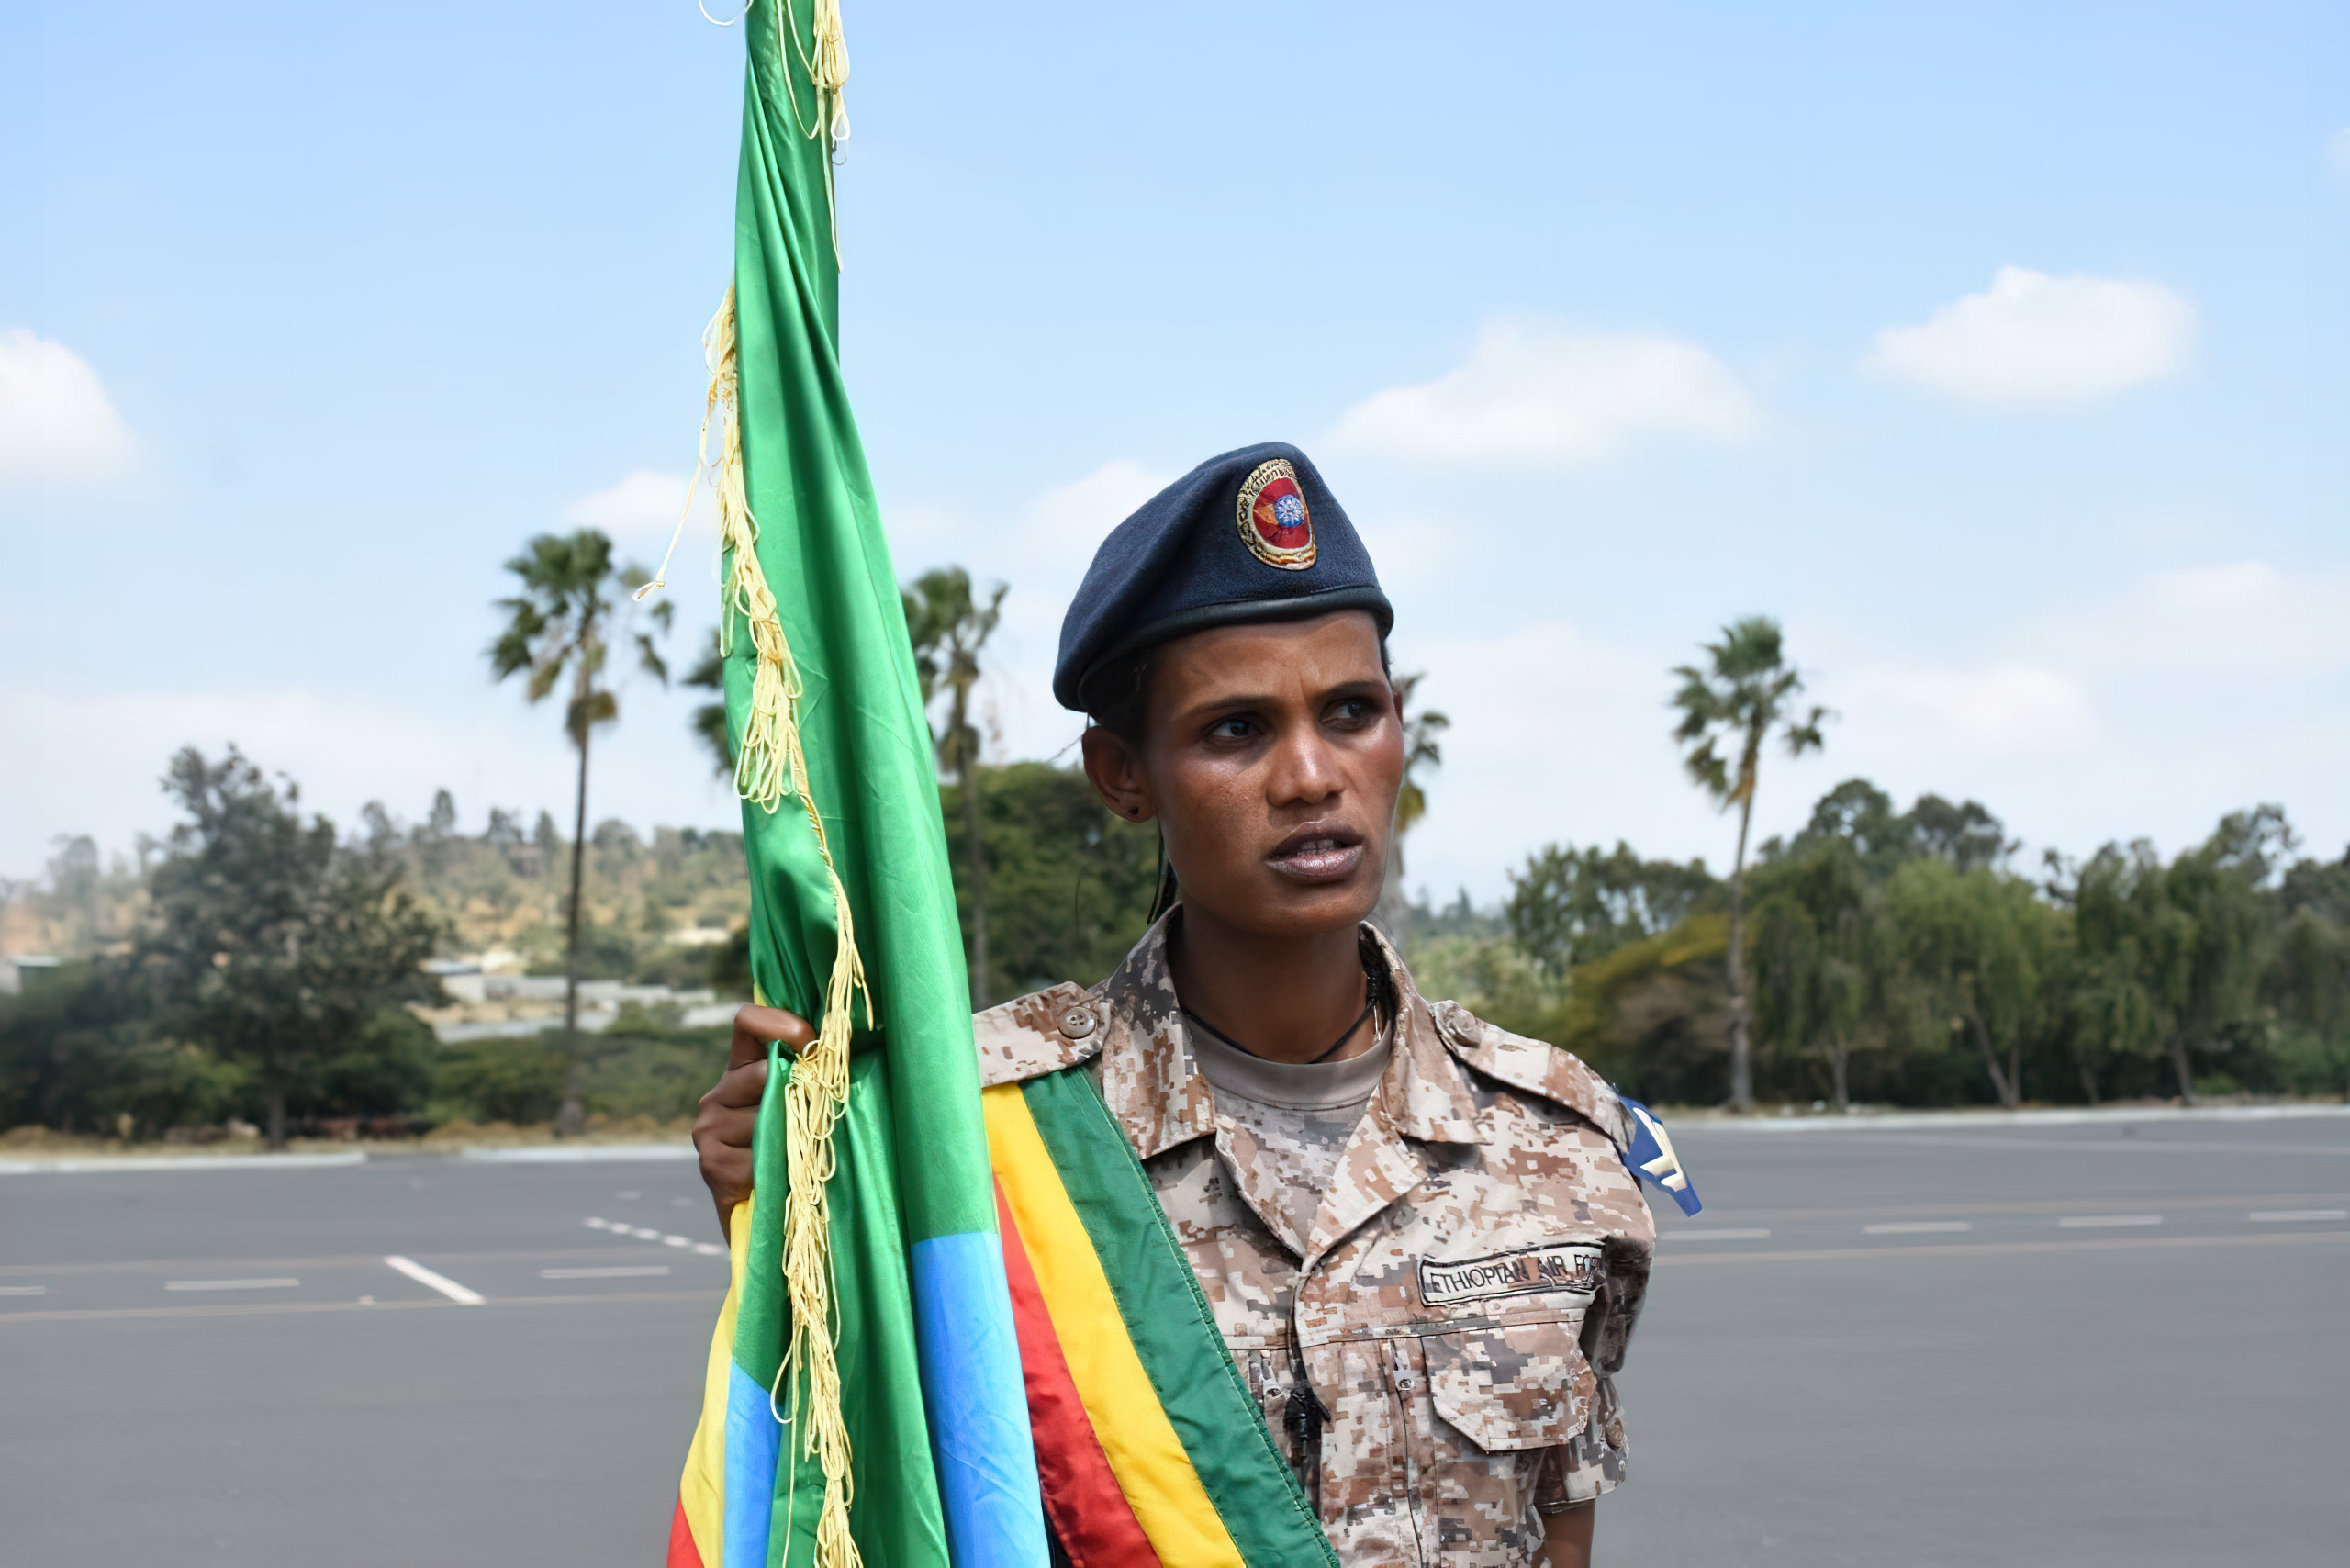 GUNMEN OF ETHIOPIA